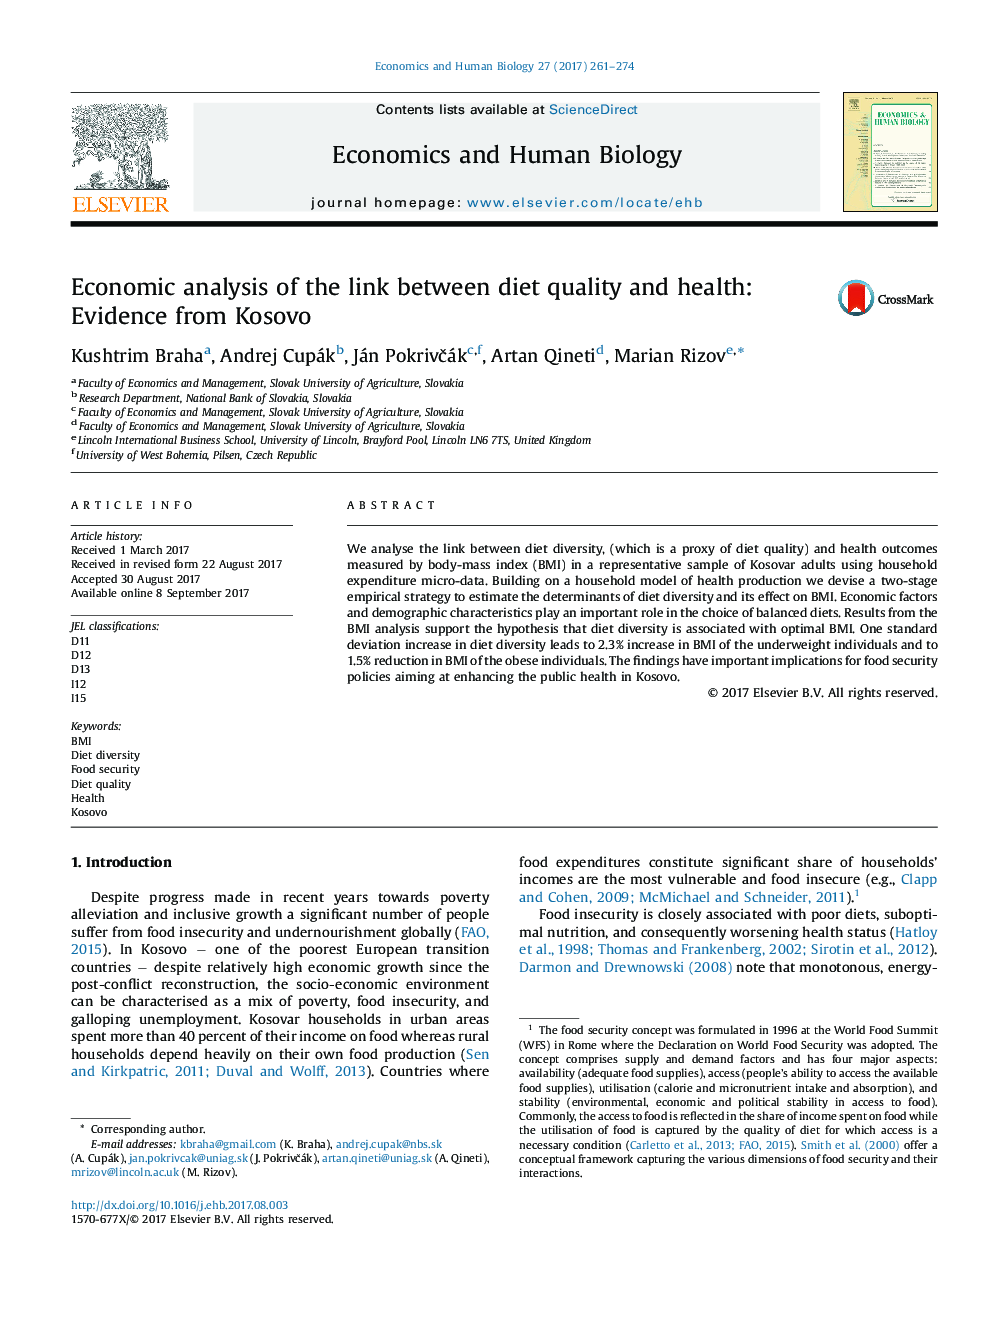 تجزیه و تحلیل اقتصادی ارتباط بین کیفیت رژیم و سلامت: شواهد از کوزوو 